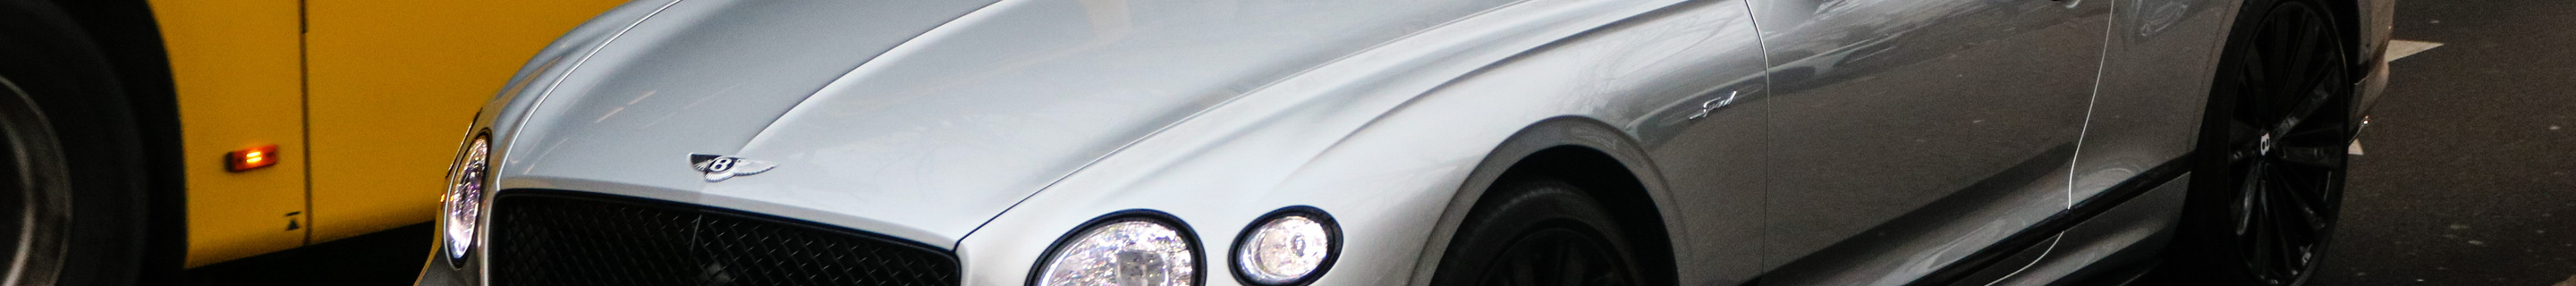 Bentley Continental GTC Speed 2021